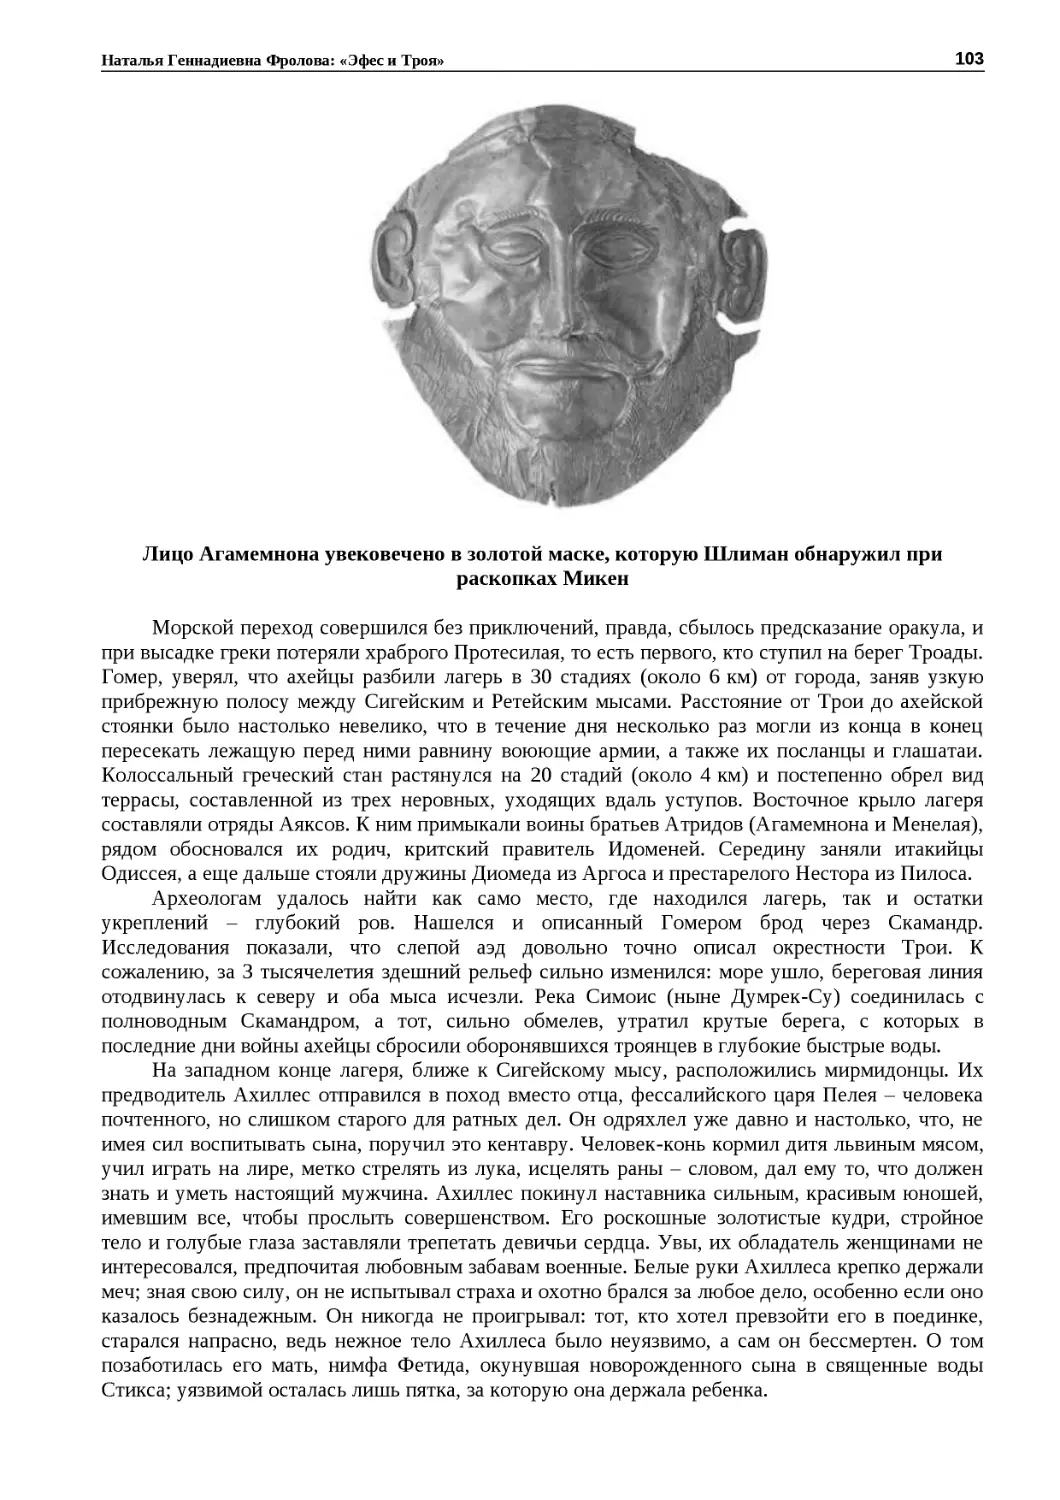 ﻿Лицо Агамемнона увековечено в золотой маске, которую Ӹлиман обнаружил при раскопках Мике